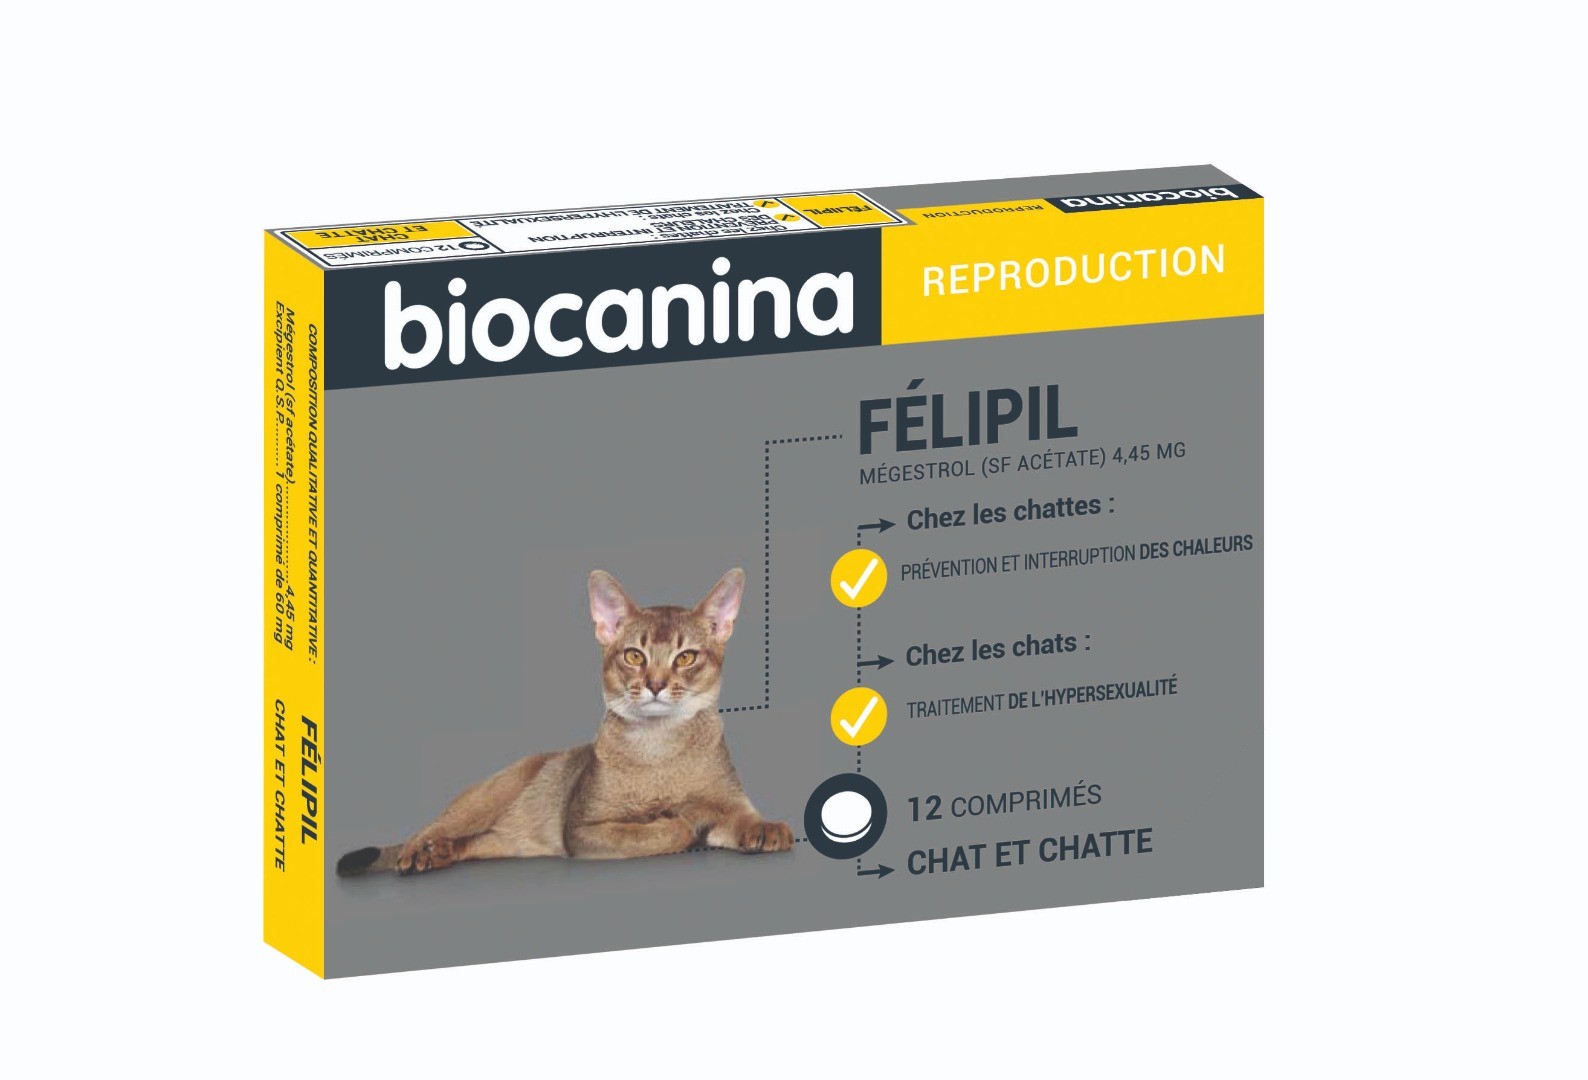 Biocanina FELIPIL reproduction - 6 comprimés